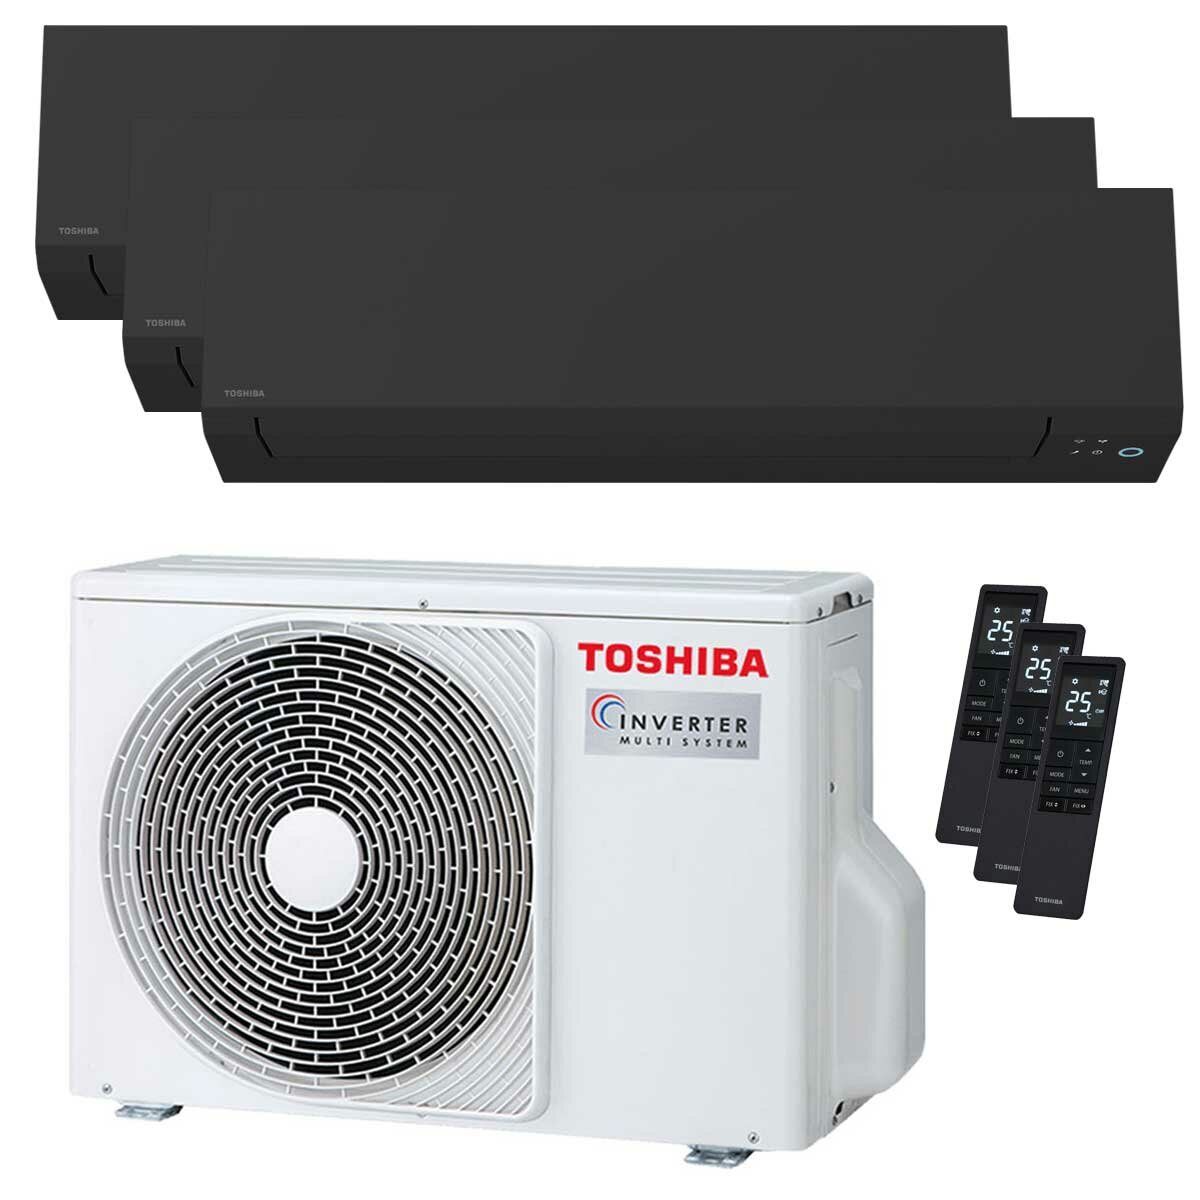 Toshiba SHORAI Edge Black climatiseur trial split 7000+7000+12000 BTU inverseur A+++ unité extérieure wifi 5,2 kW 